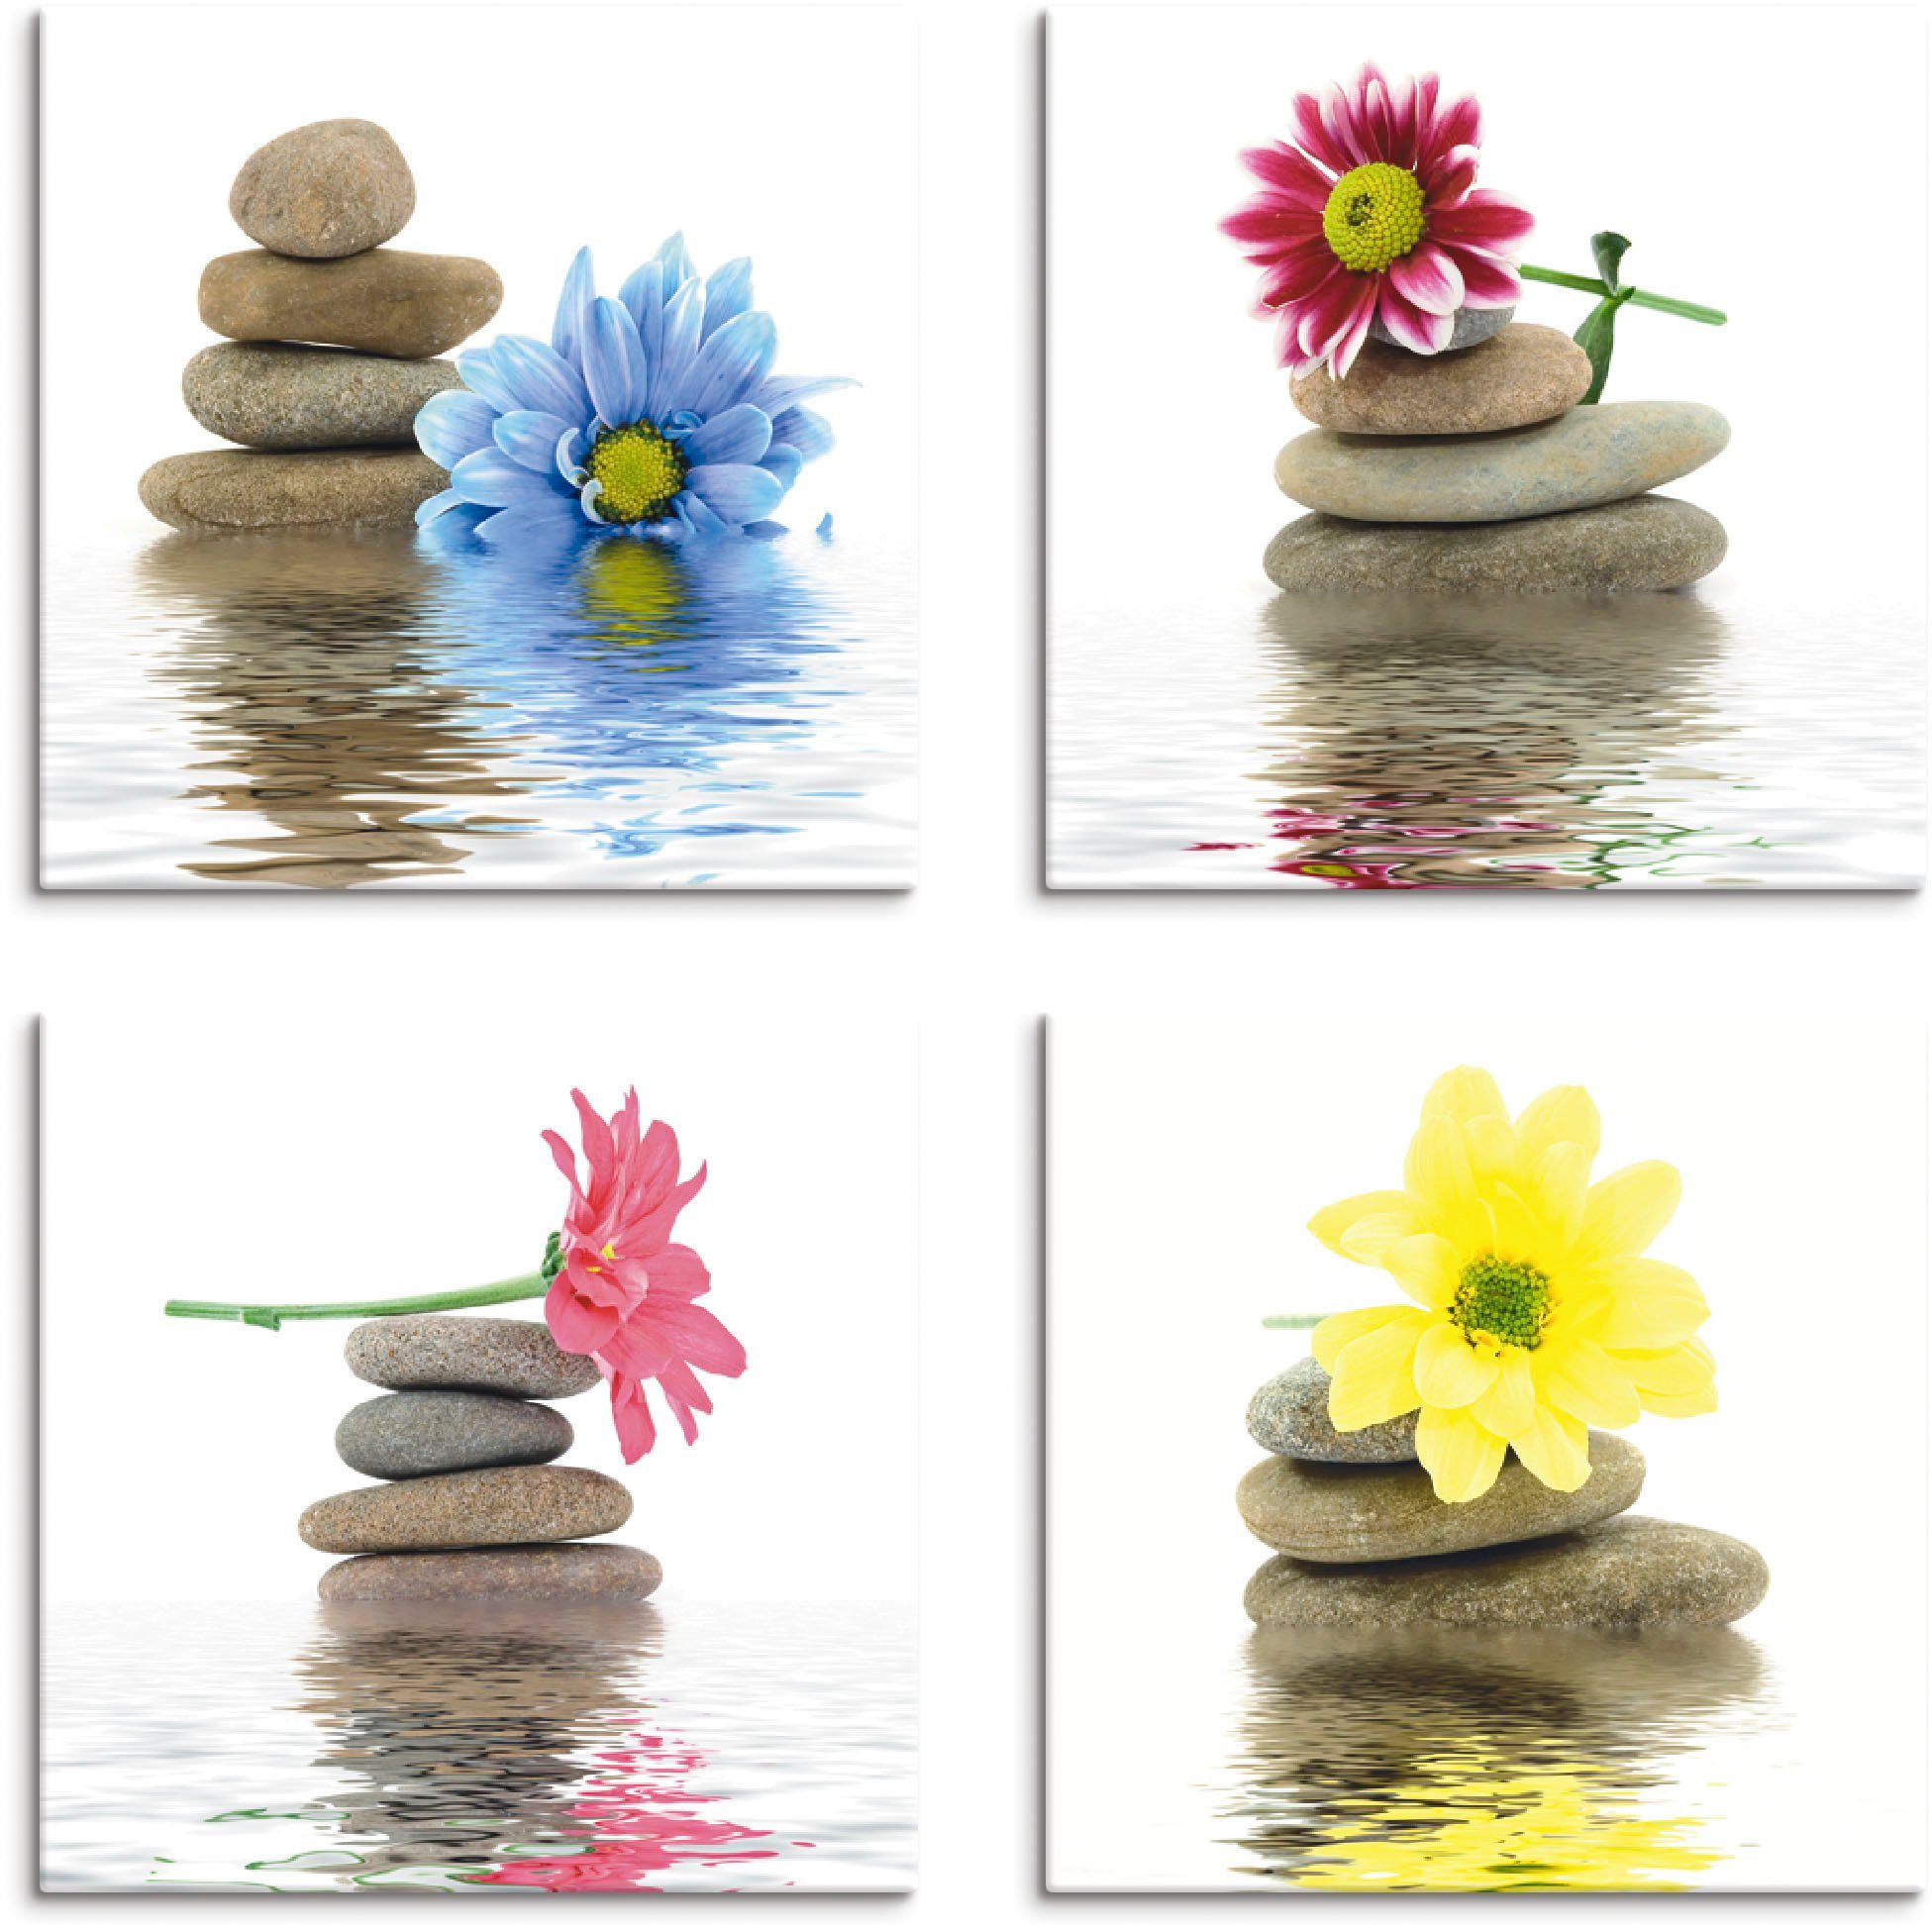 Artland Artprint op linnen Zen therapie-stenen met bloemen (4 stuks)